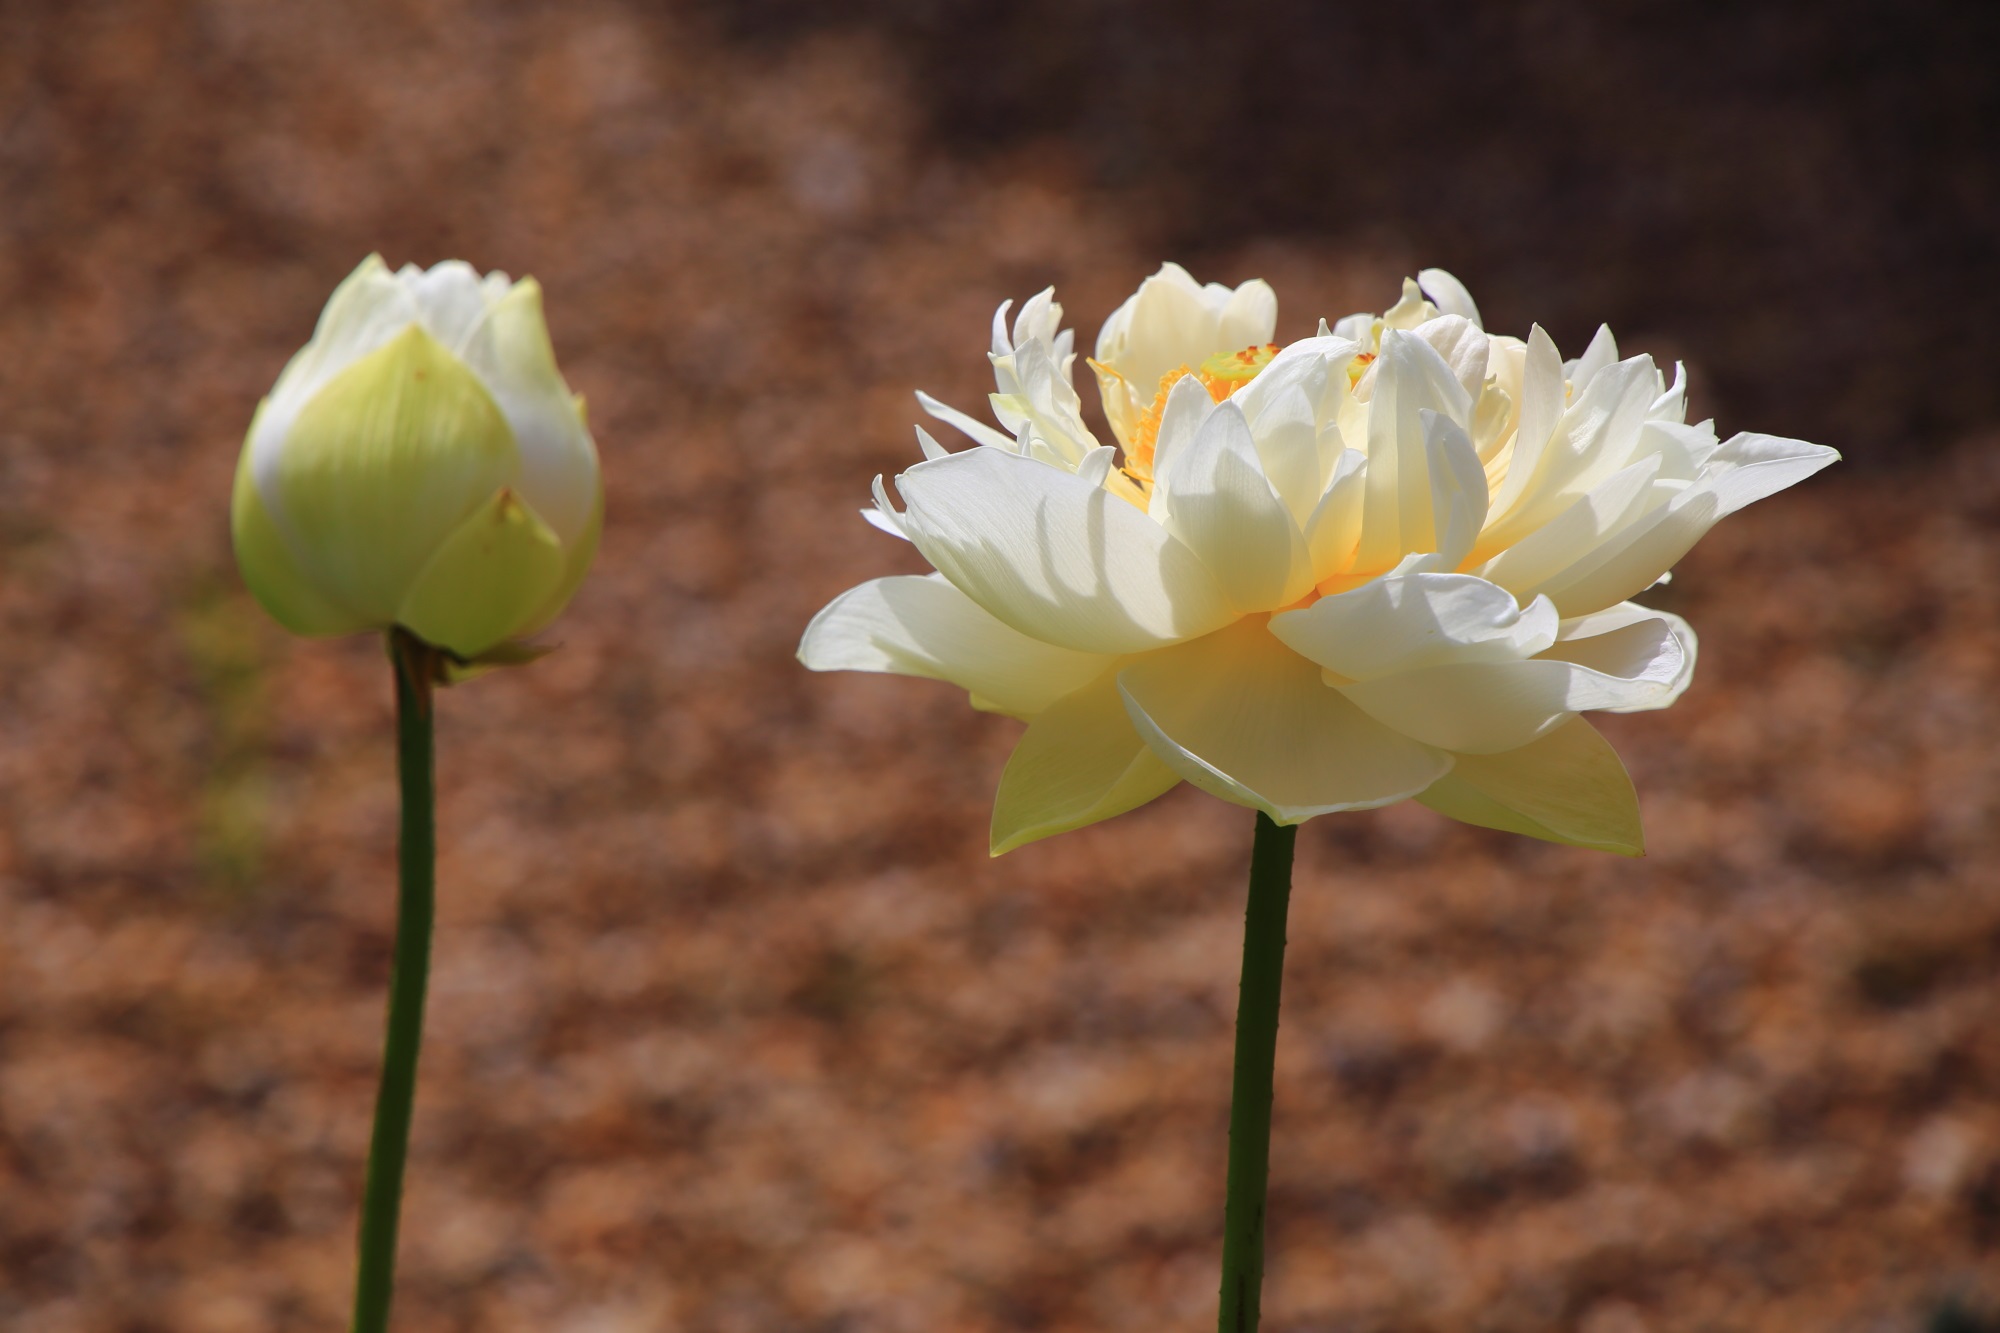 萬福寺の砂の文様を背景にした煌く白い蓮の花と蕾